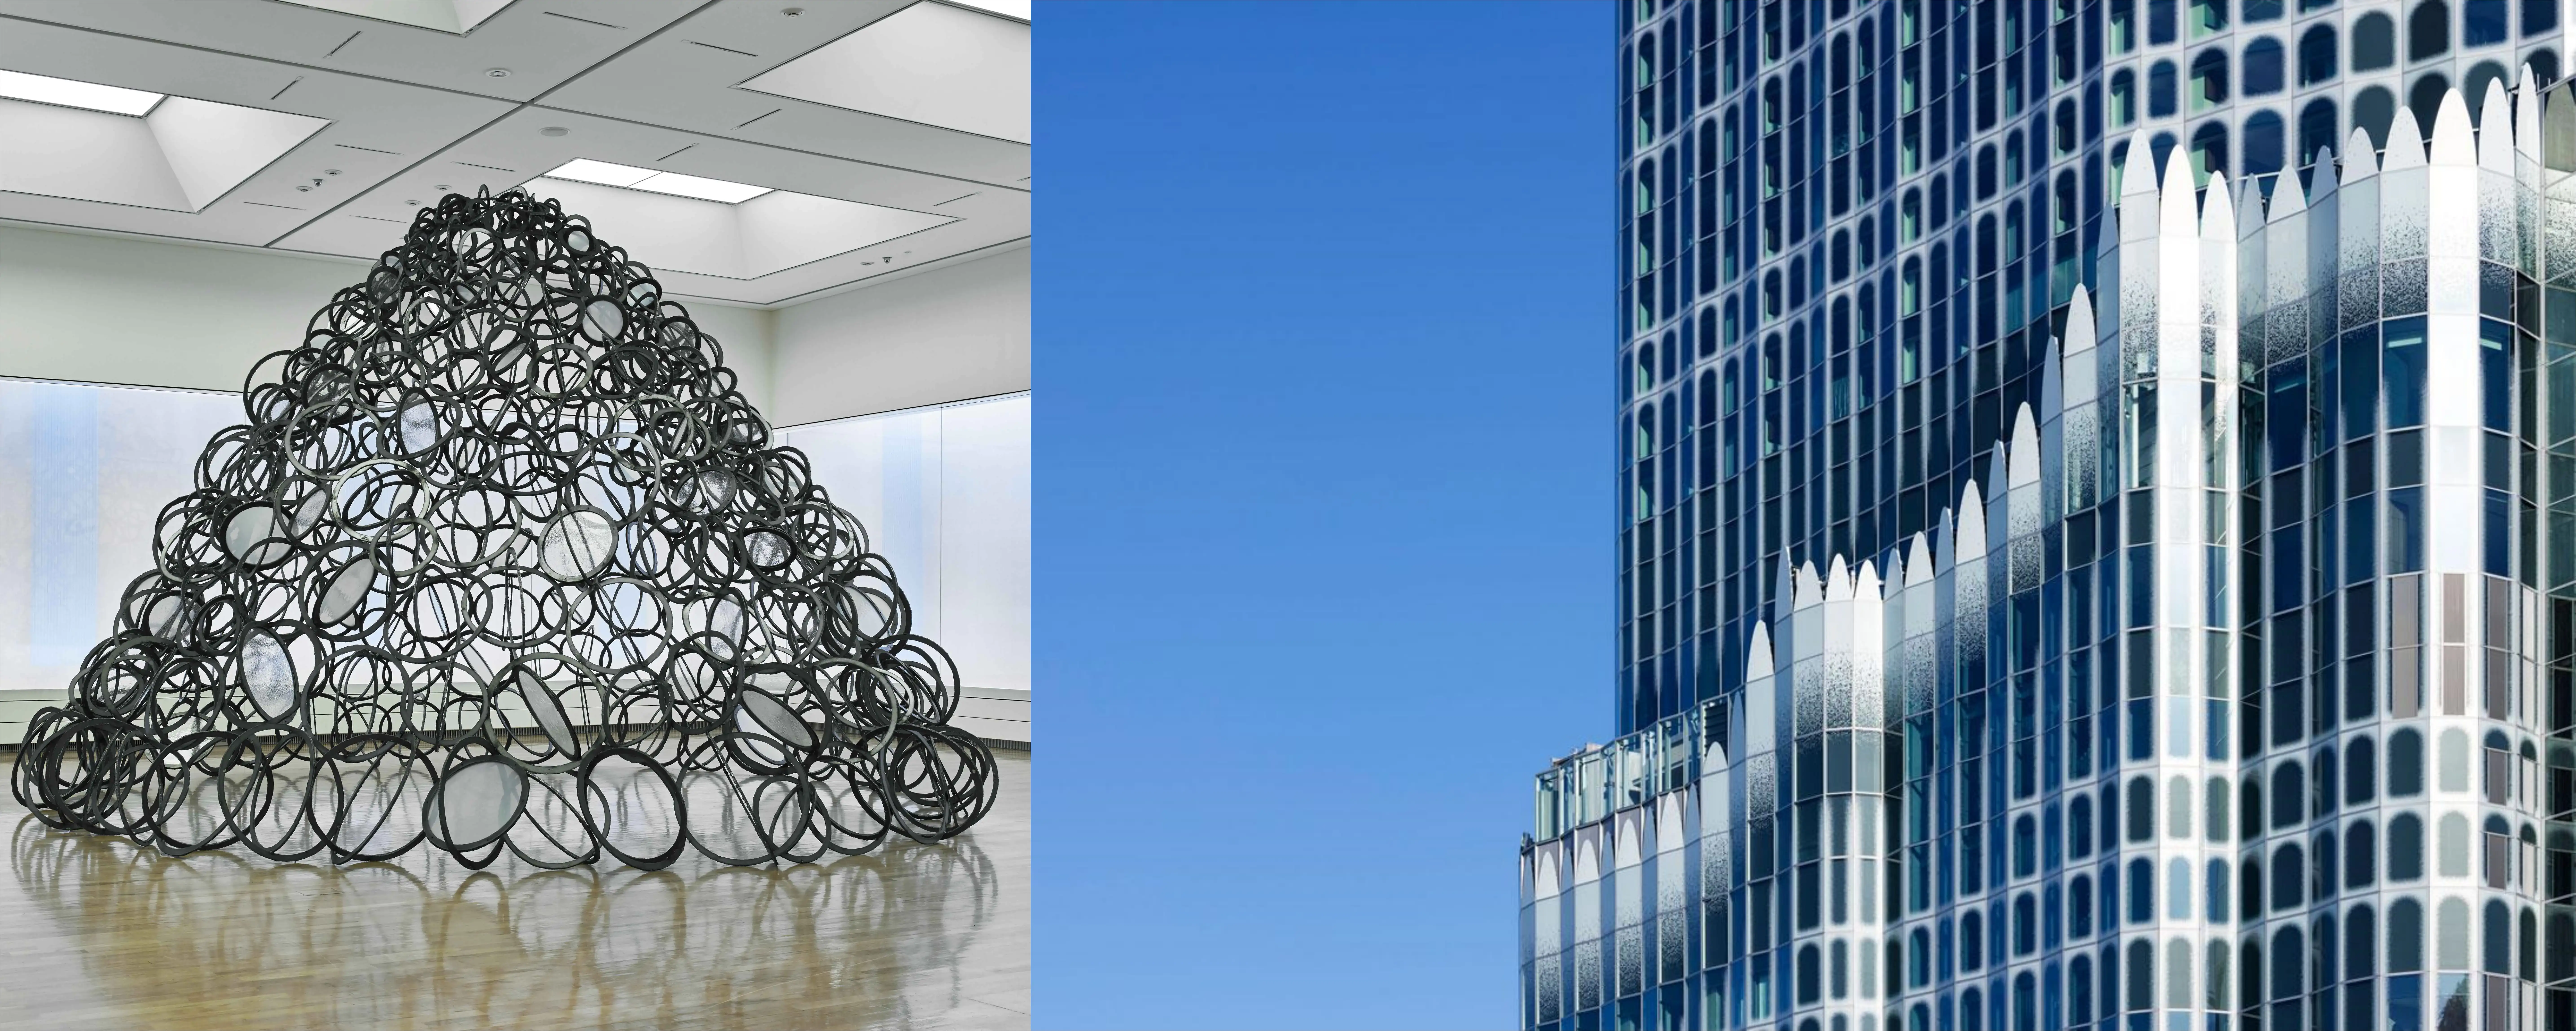 아오키 노자와 씨의 '구름과 철과 산-1(雲と鉄と山-1)은 건물 외벽에 공통되게 쓰인 '물결 문양' 모티브를 변주한 것처럼도 느껴져요. 